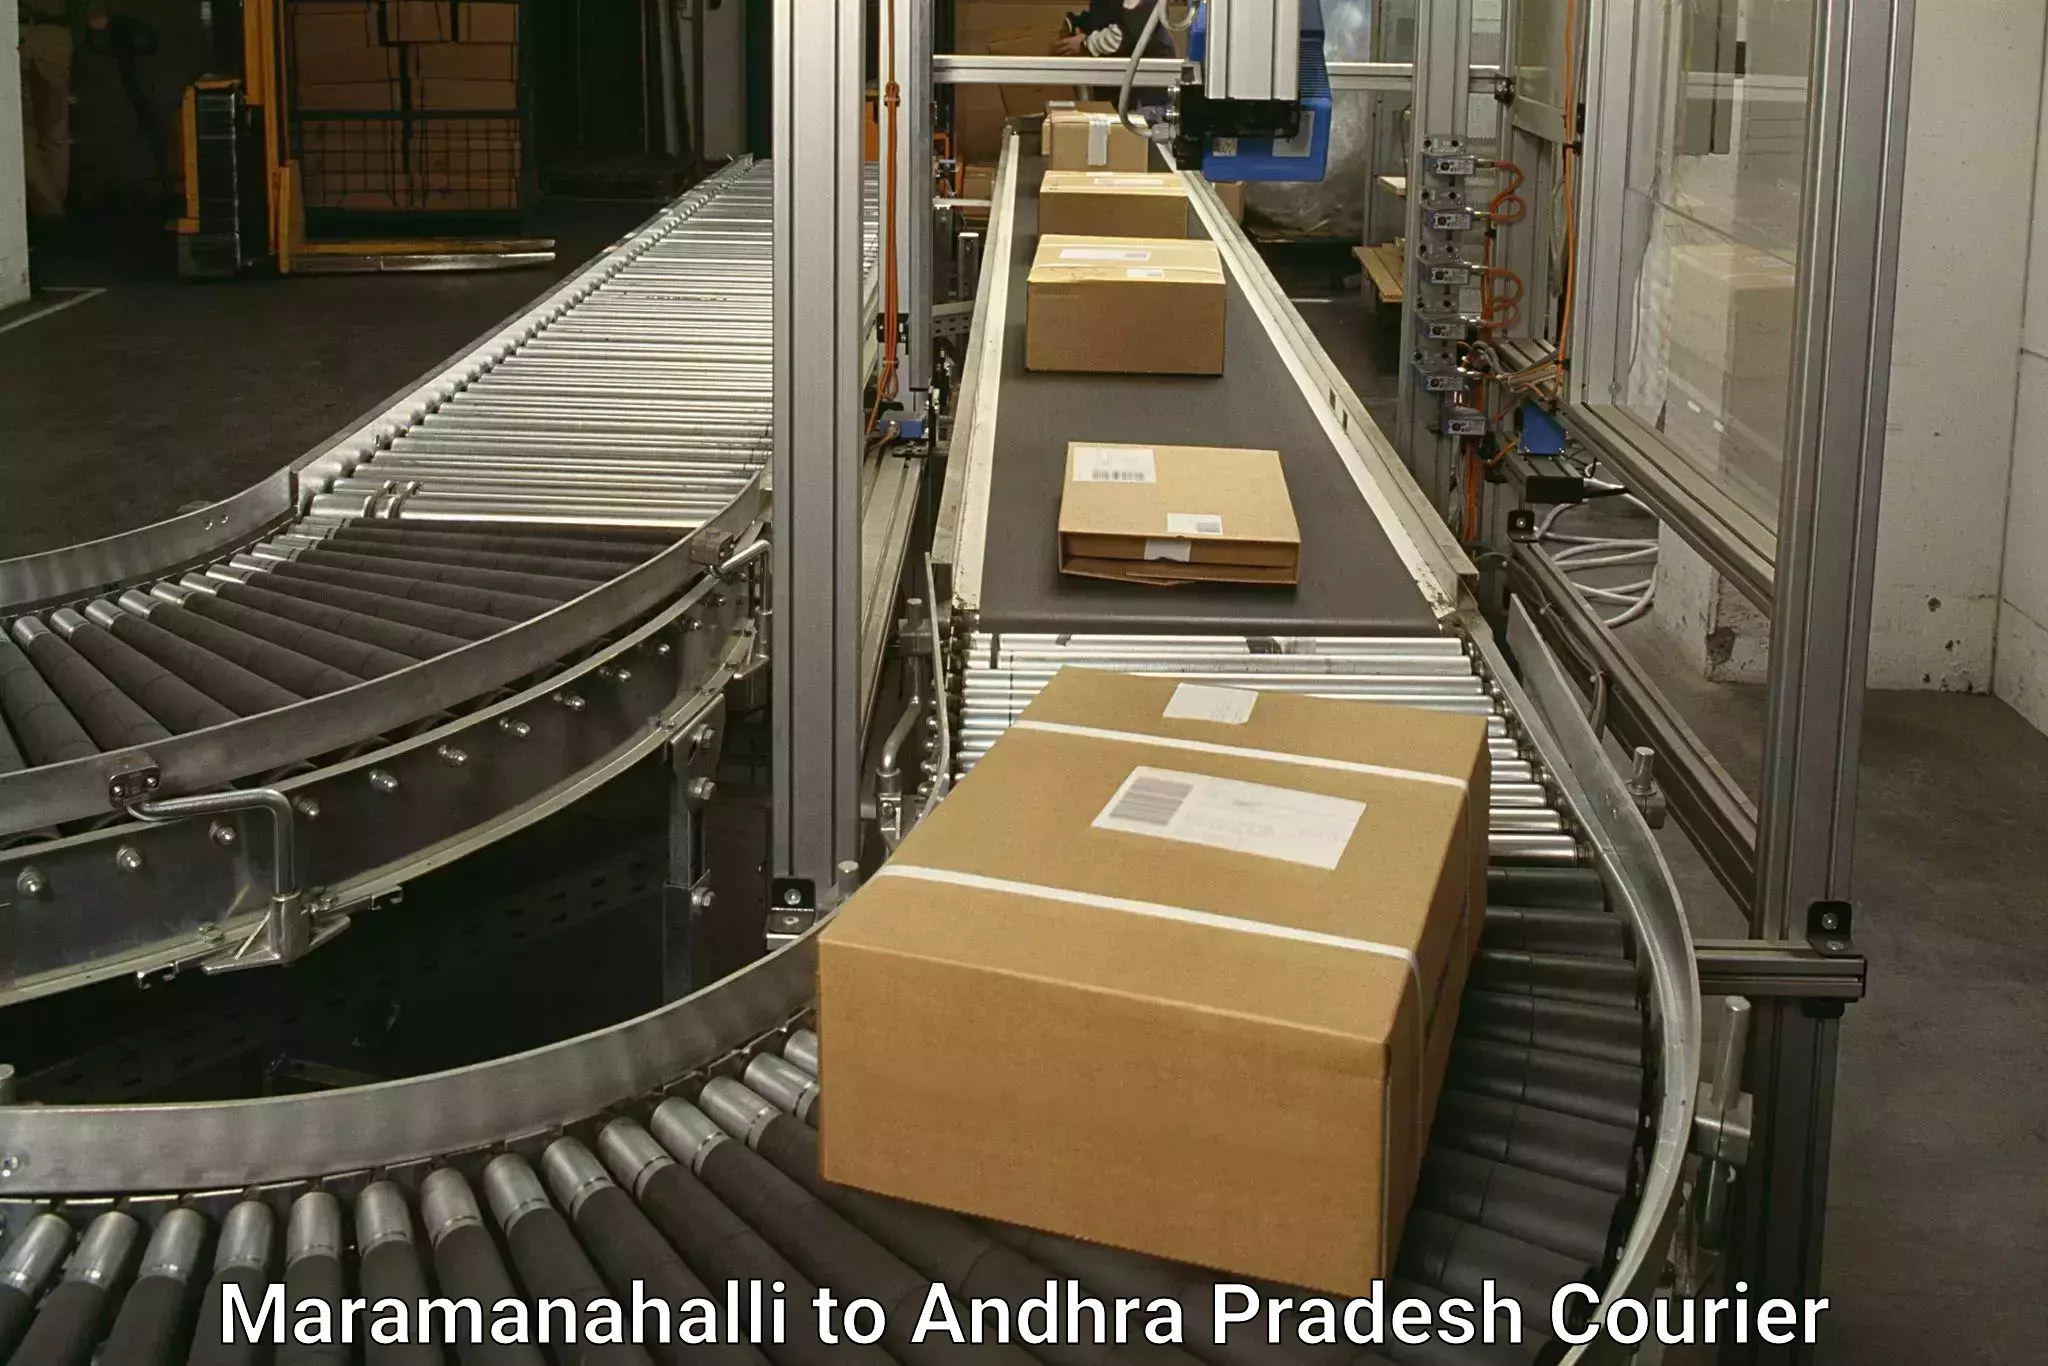 Door-to-door freight service Maramanahalli to Changaroth